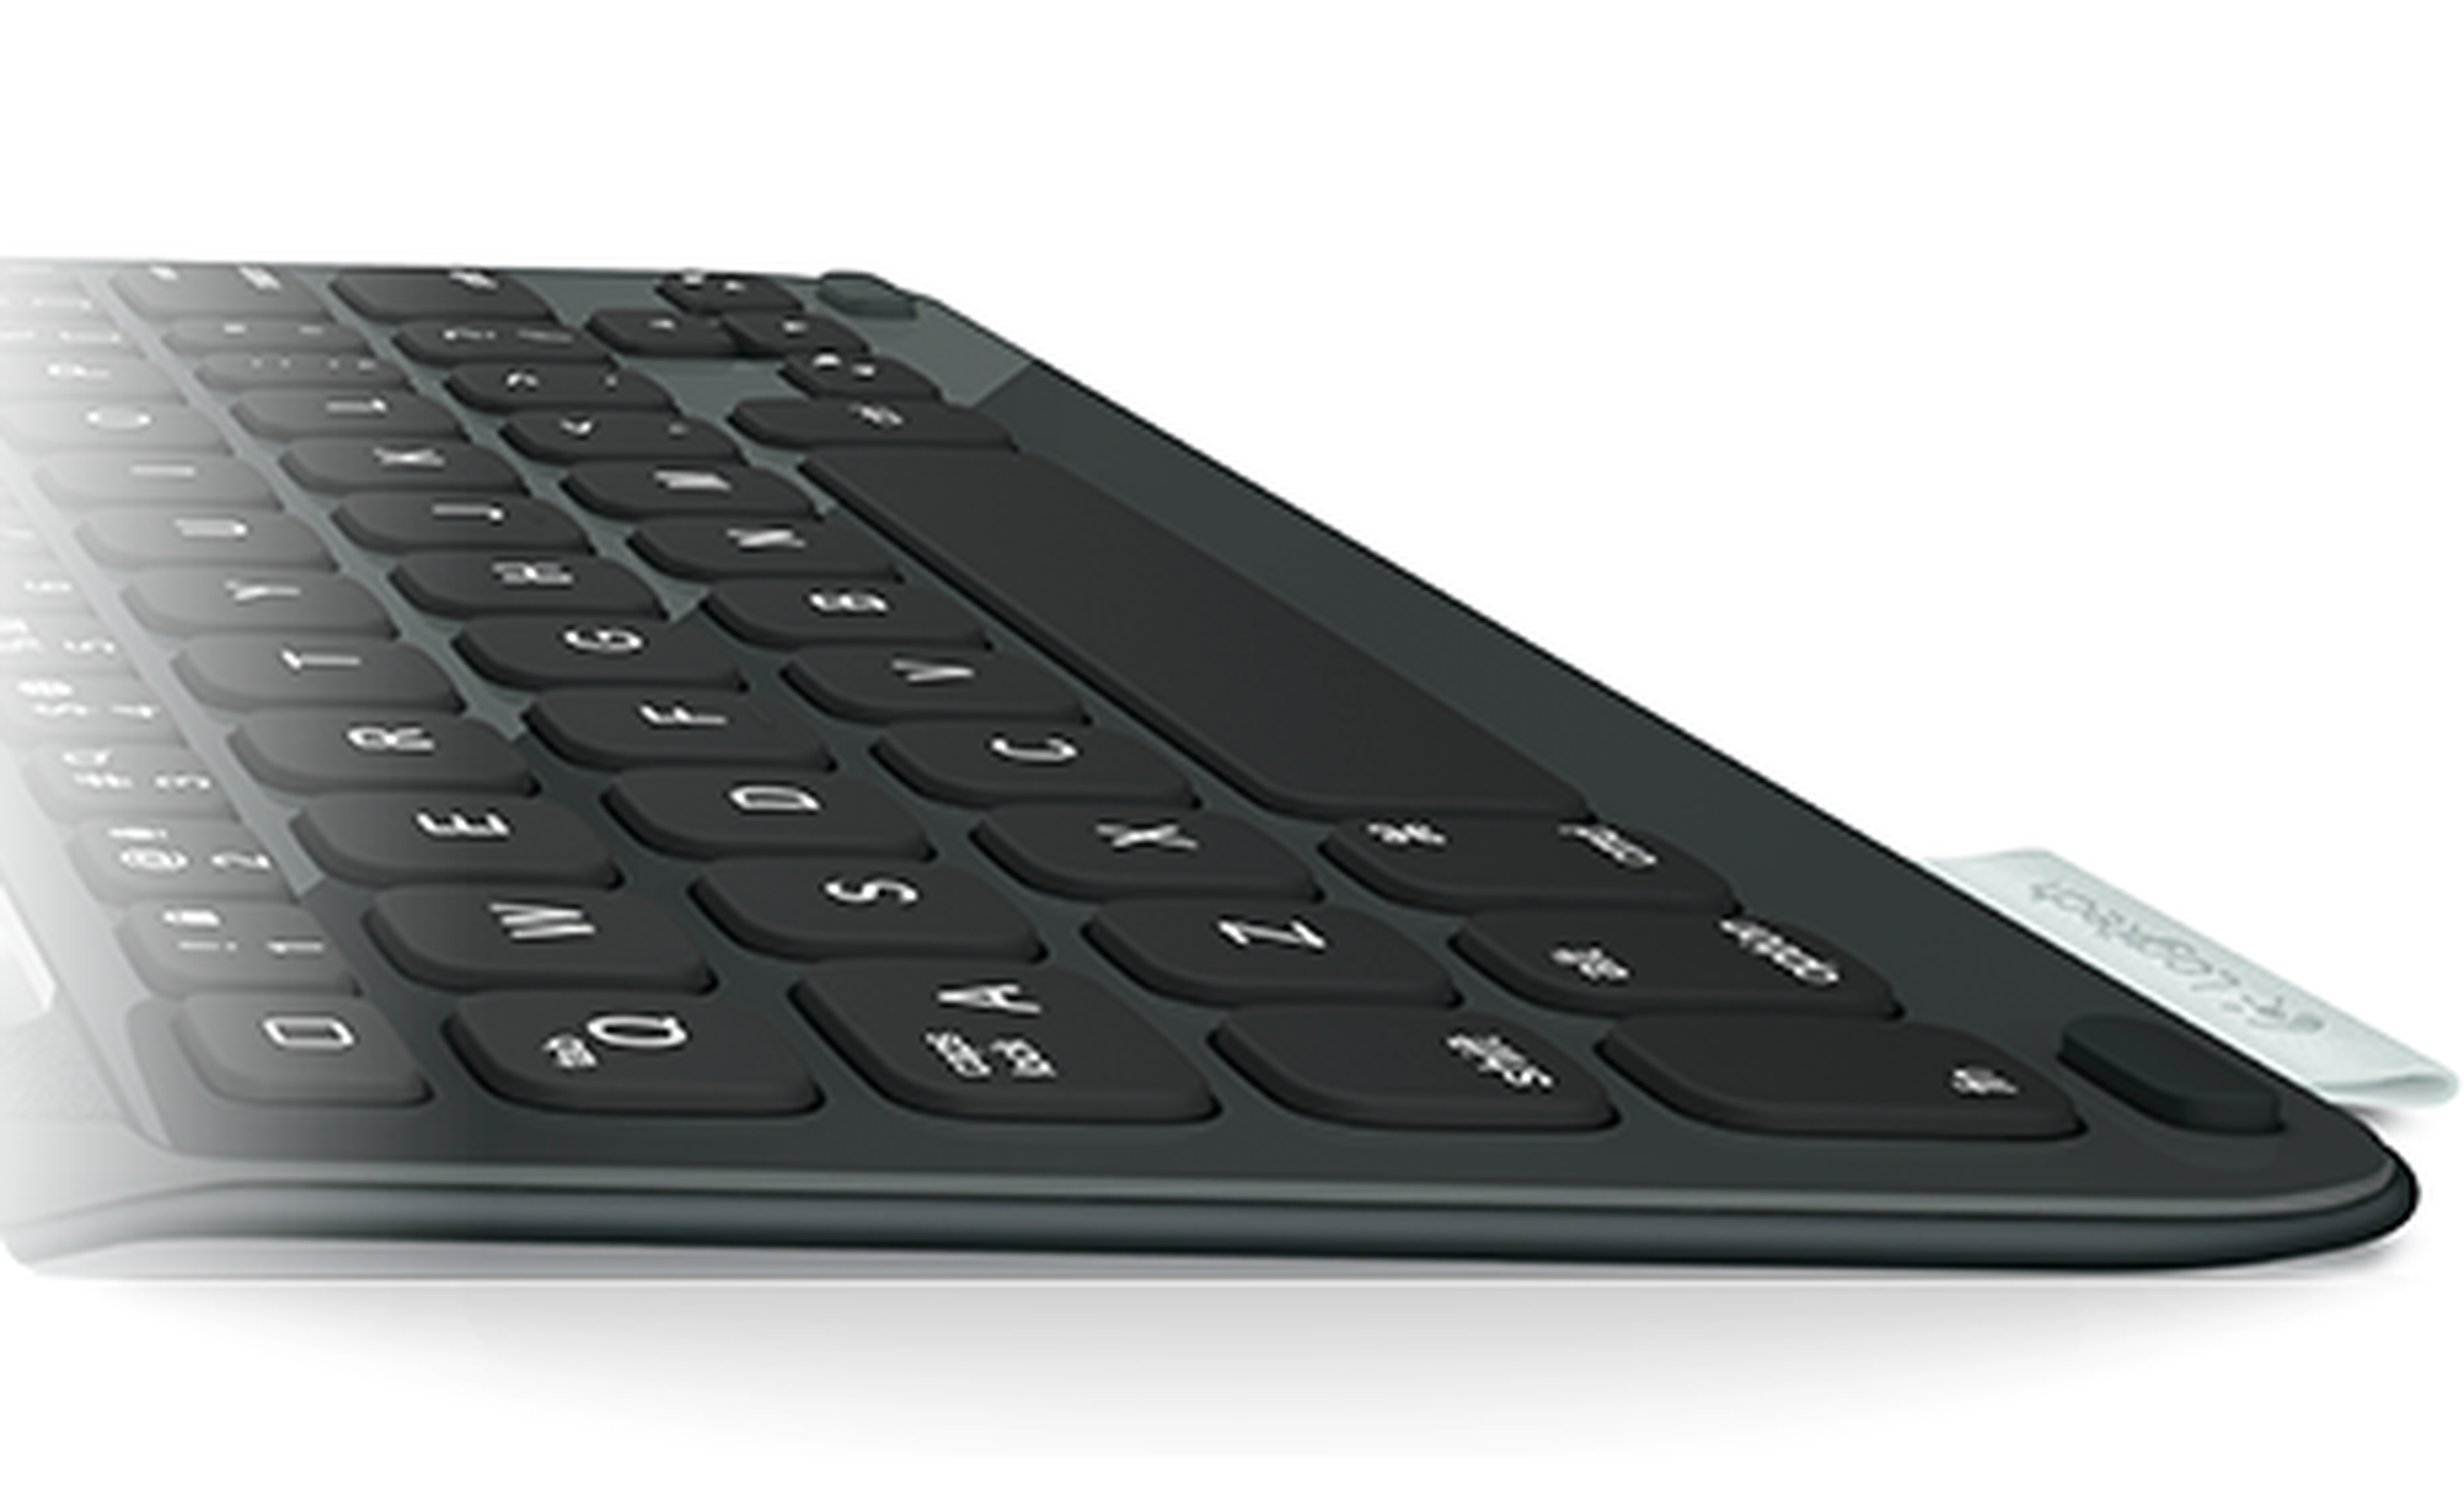 Logitech presenta nuevos teclados ultrafinos para iPad Air